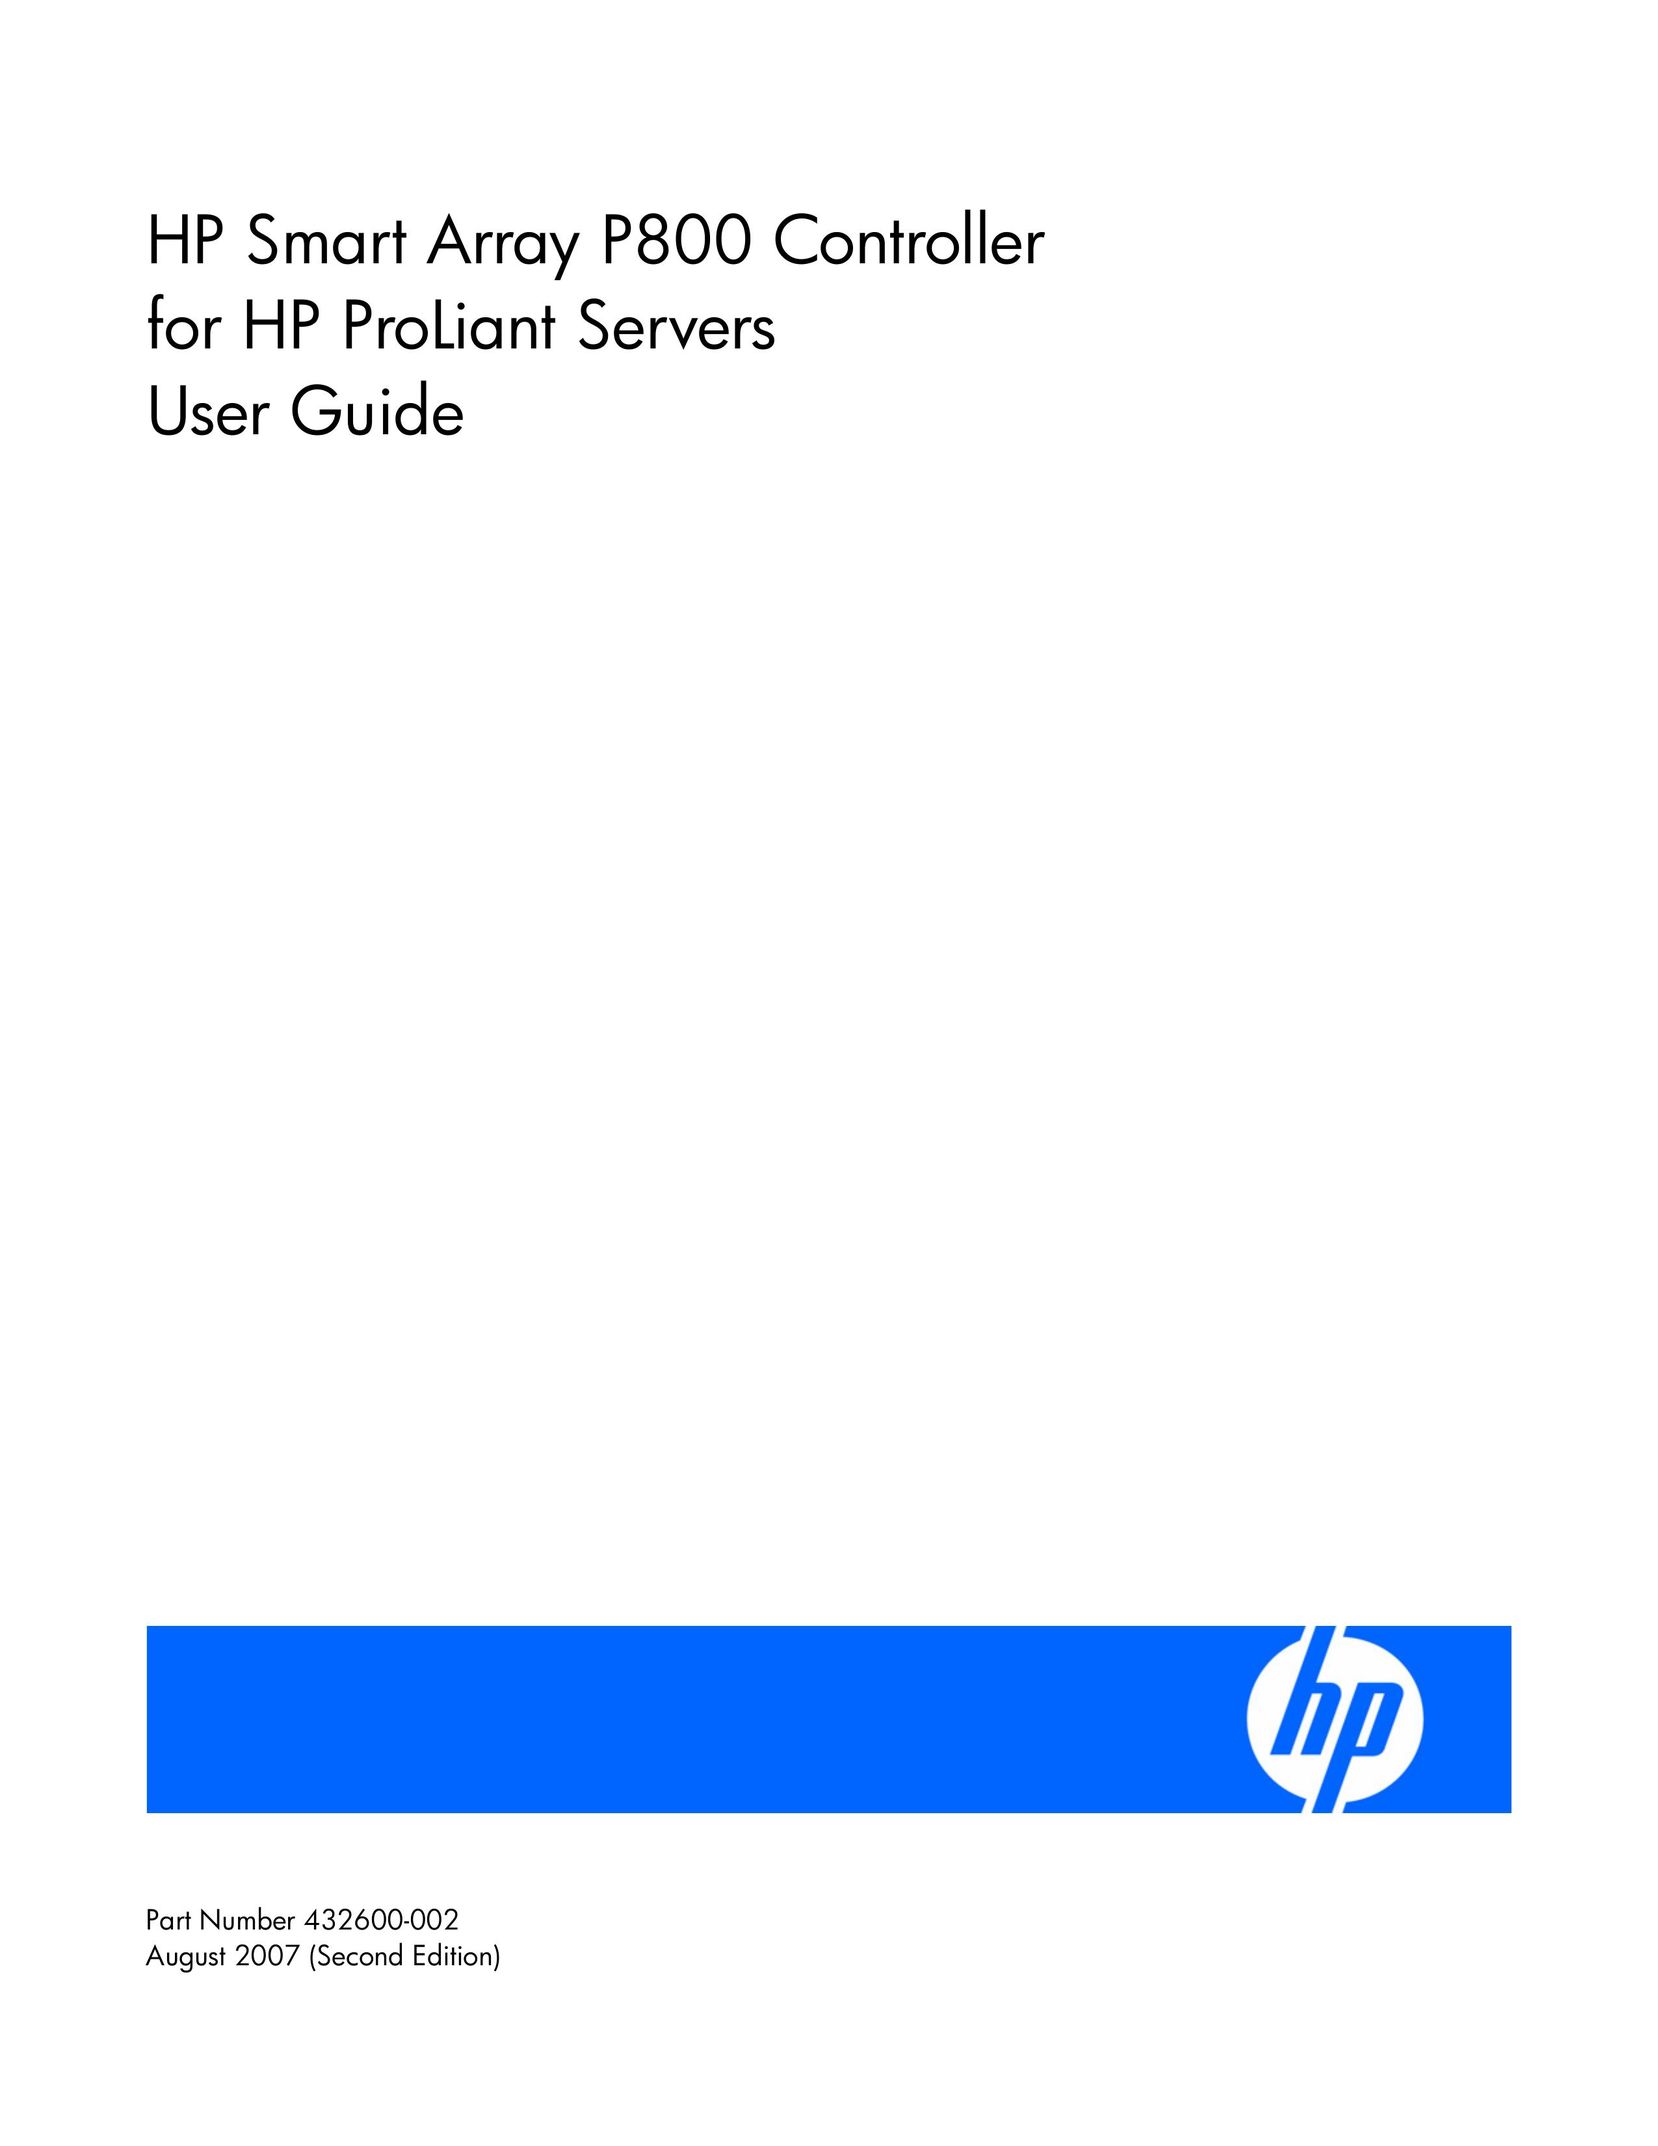 HP (Hewlett-Packard) 432600-002 Server User Manual